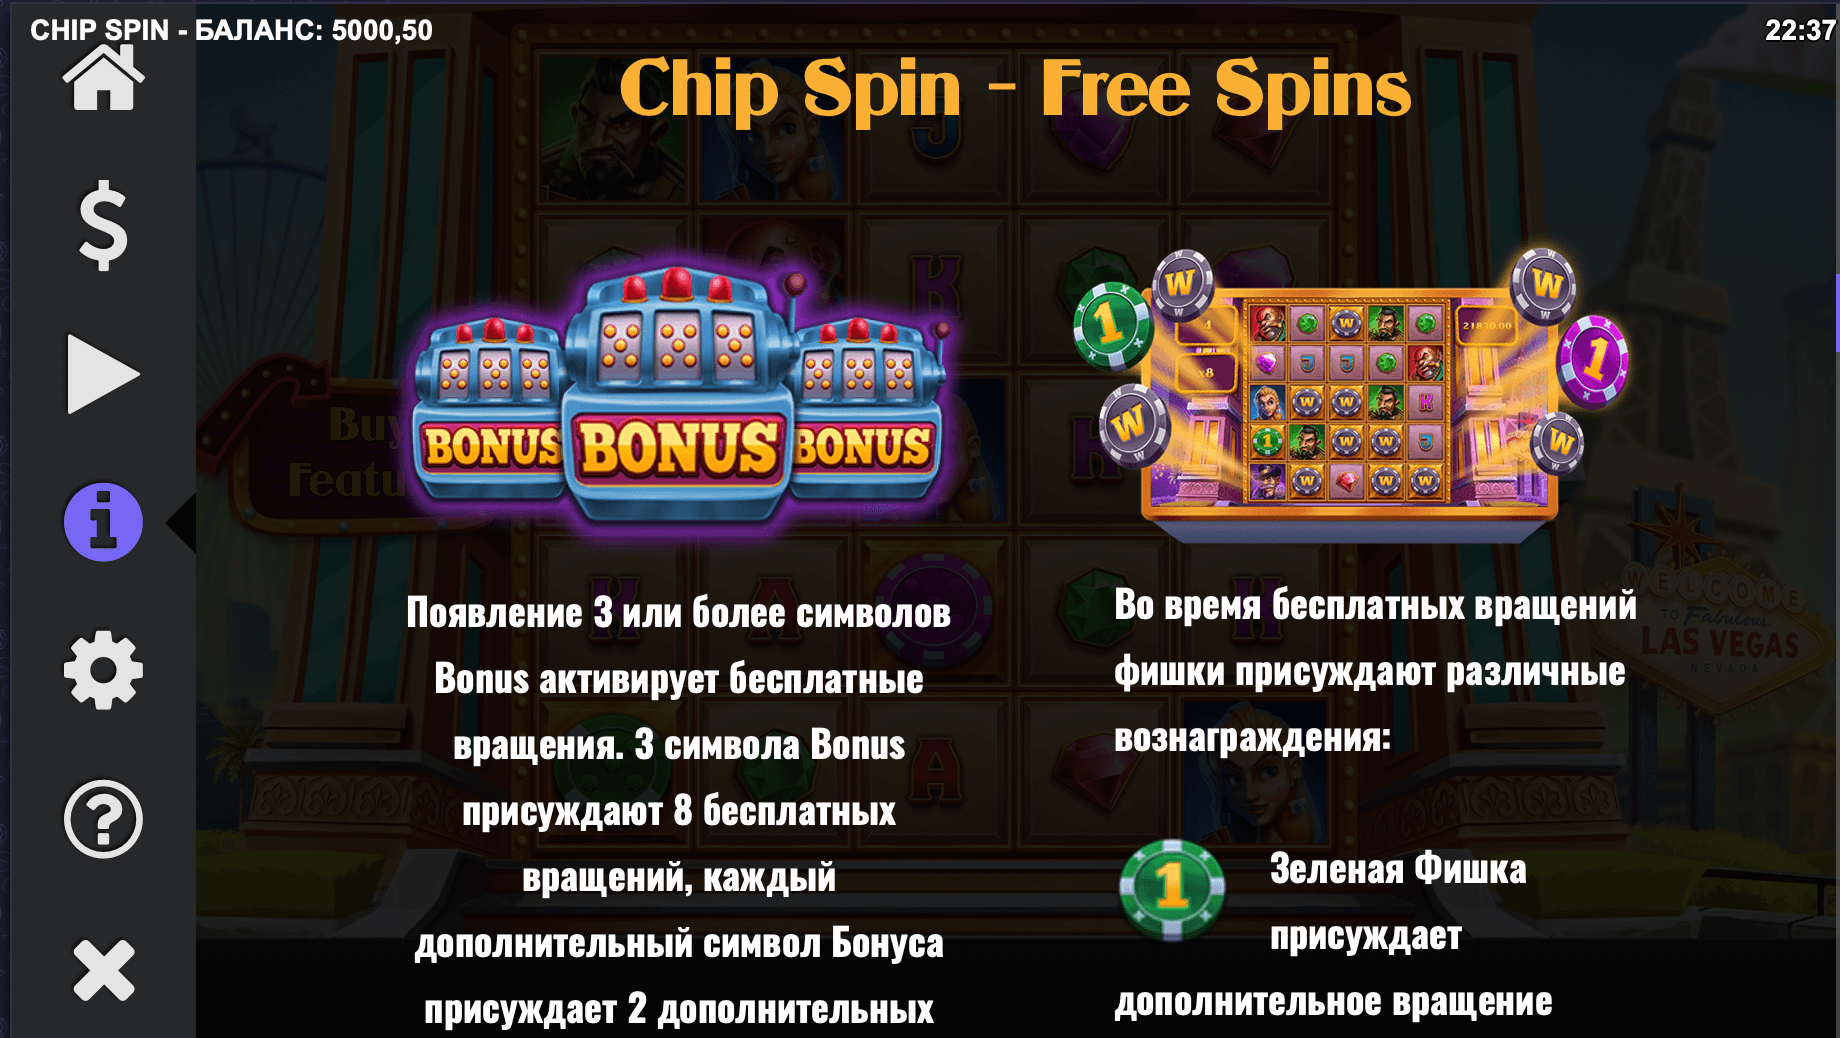 Chip-Spin-Bonus